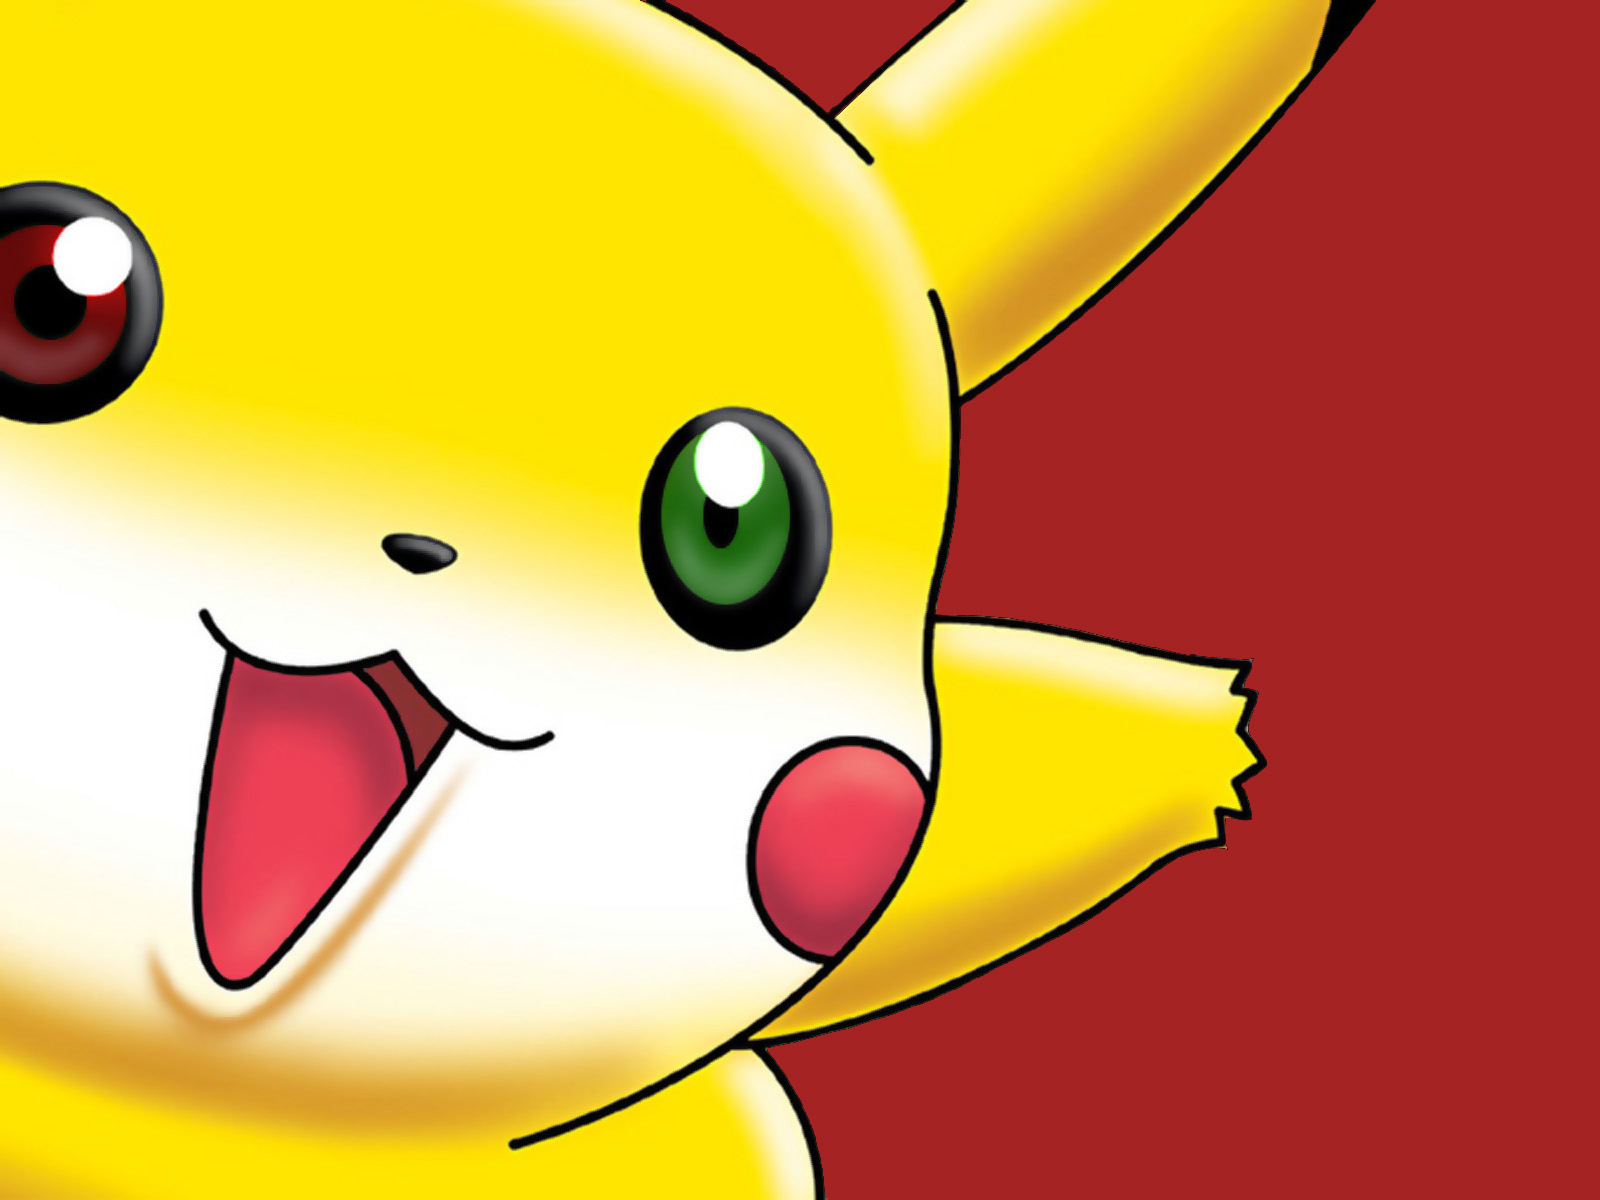 Tổng hợp hình nền ảnh pikachu ngầu với những tư thế thú vị và đáng yêu của  Pikachu